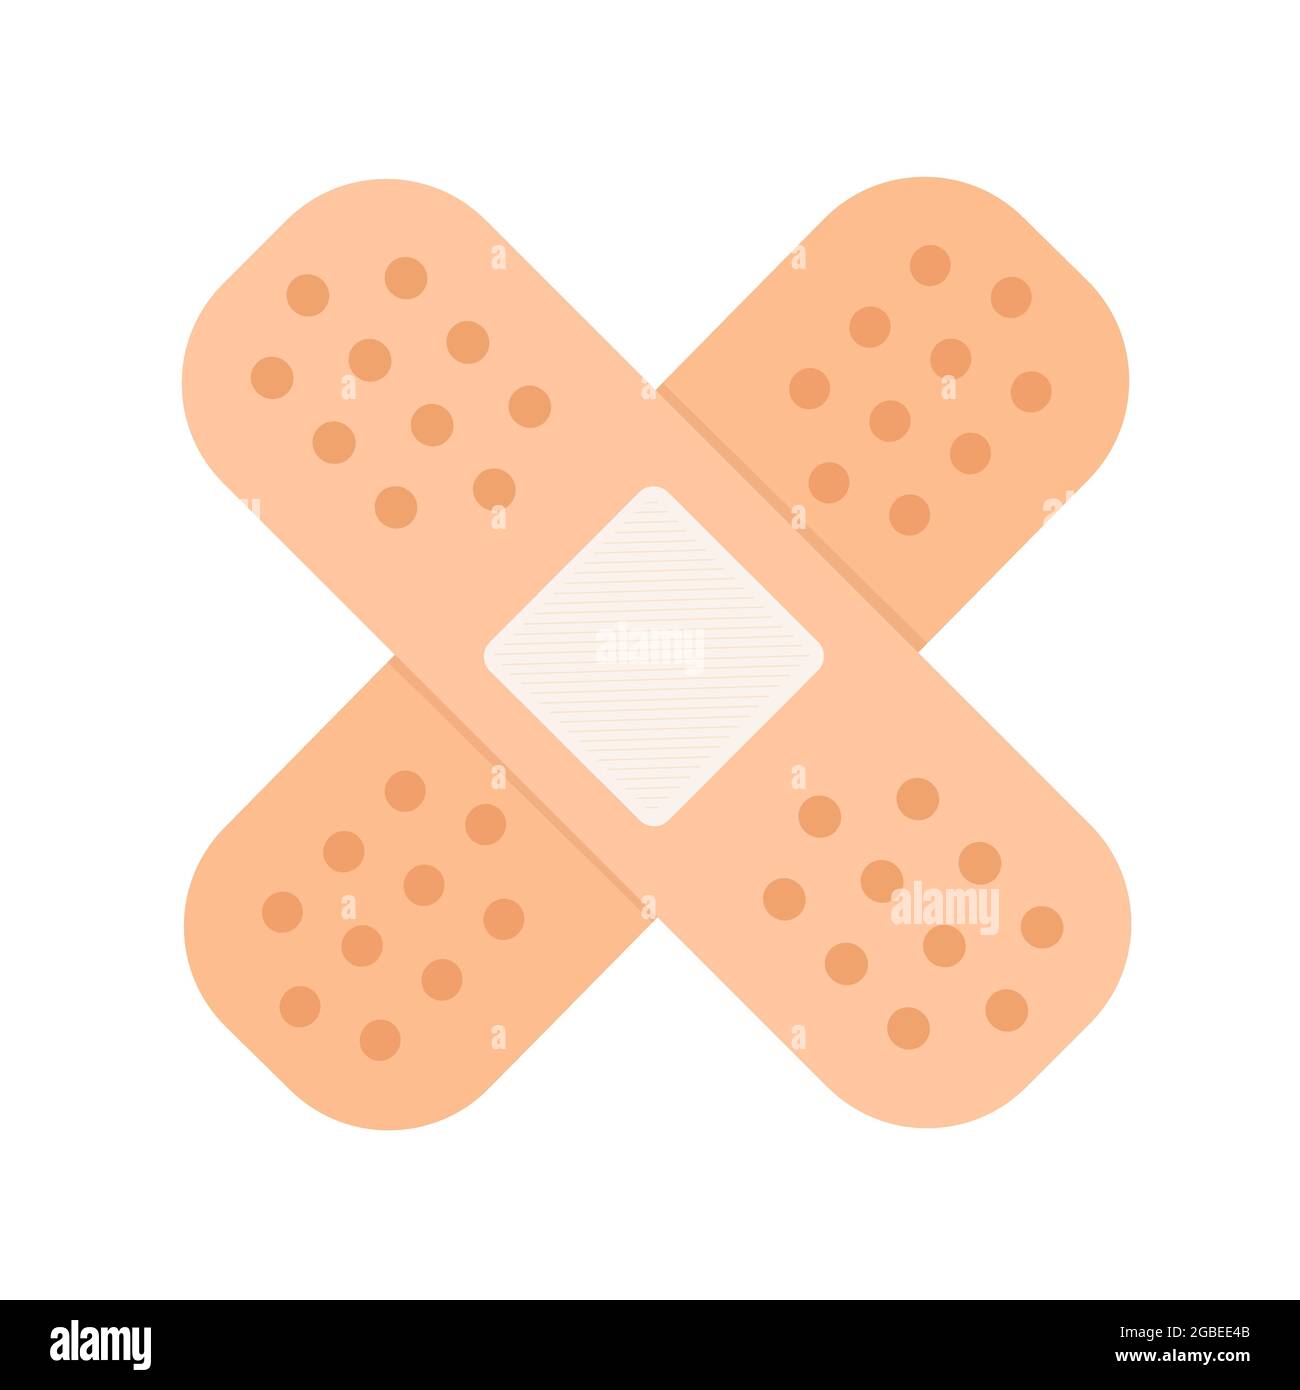 Sticking plaster icon, crossed adhesive bandage or band aid - flat design illustration, isolated, white background Stock Photo